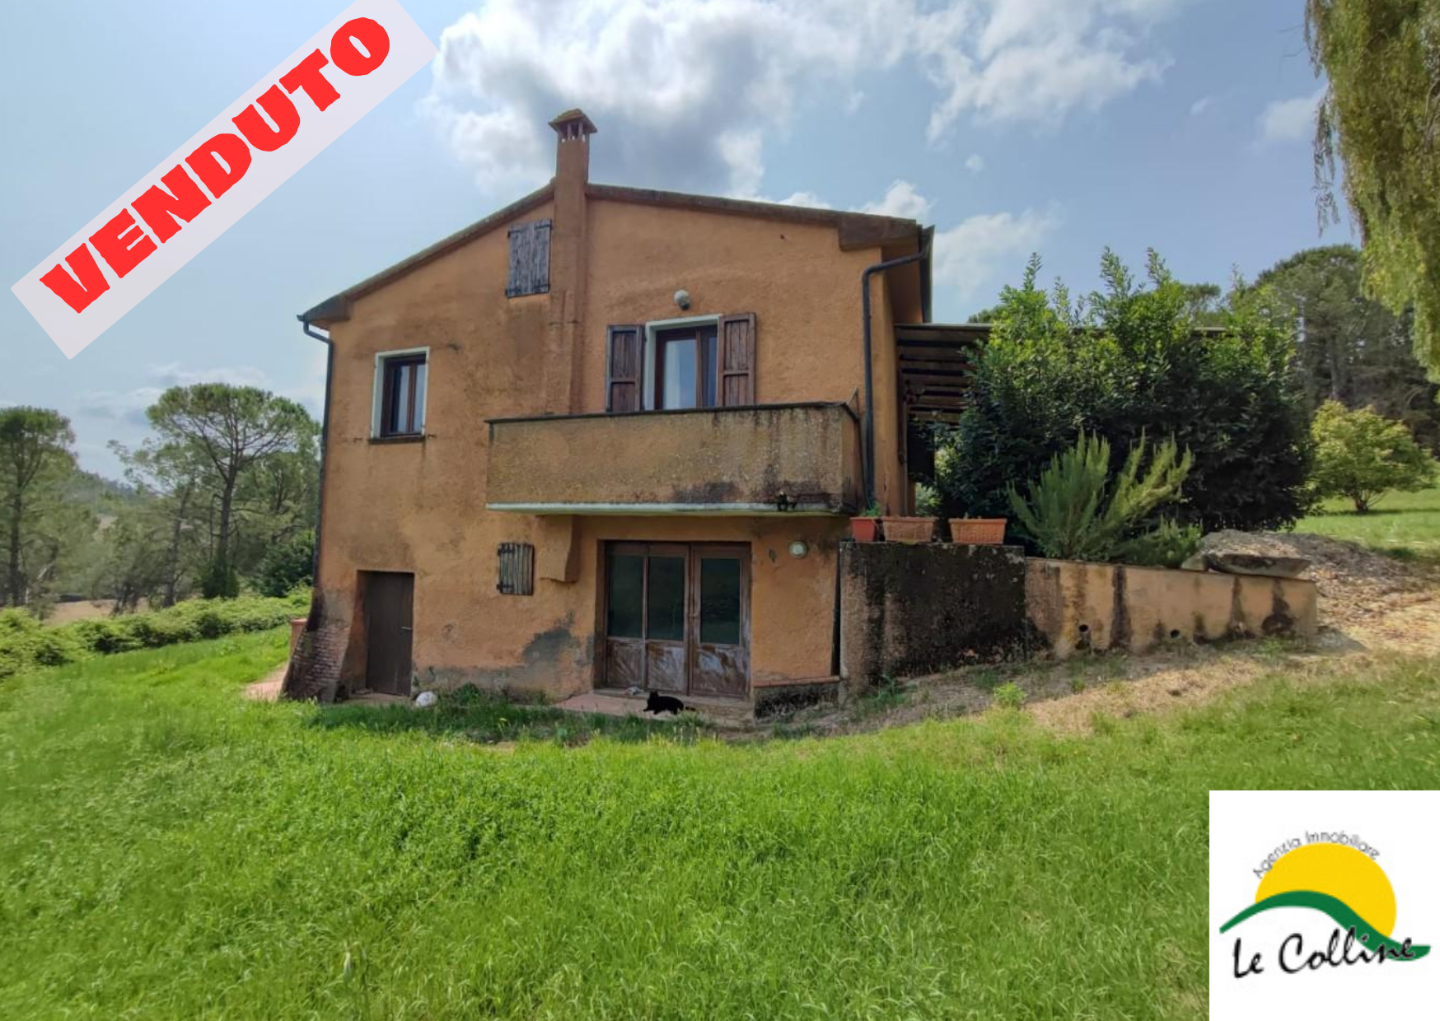 Farmhouse for sale in Peccioli (PI)